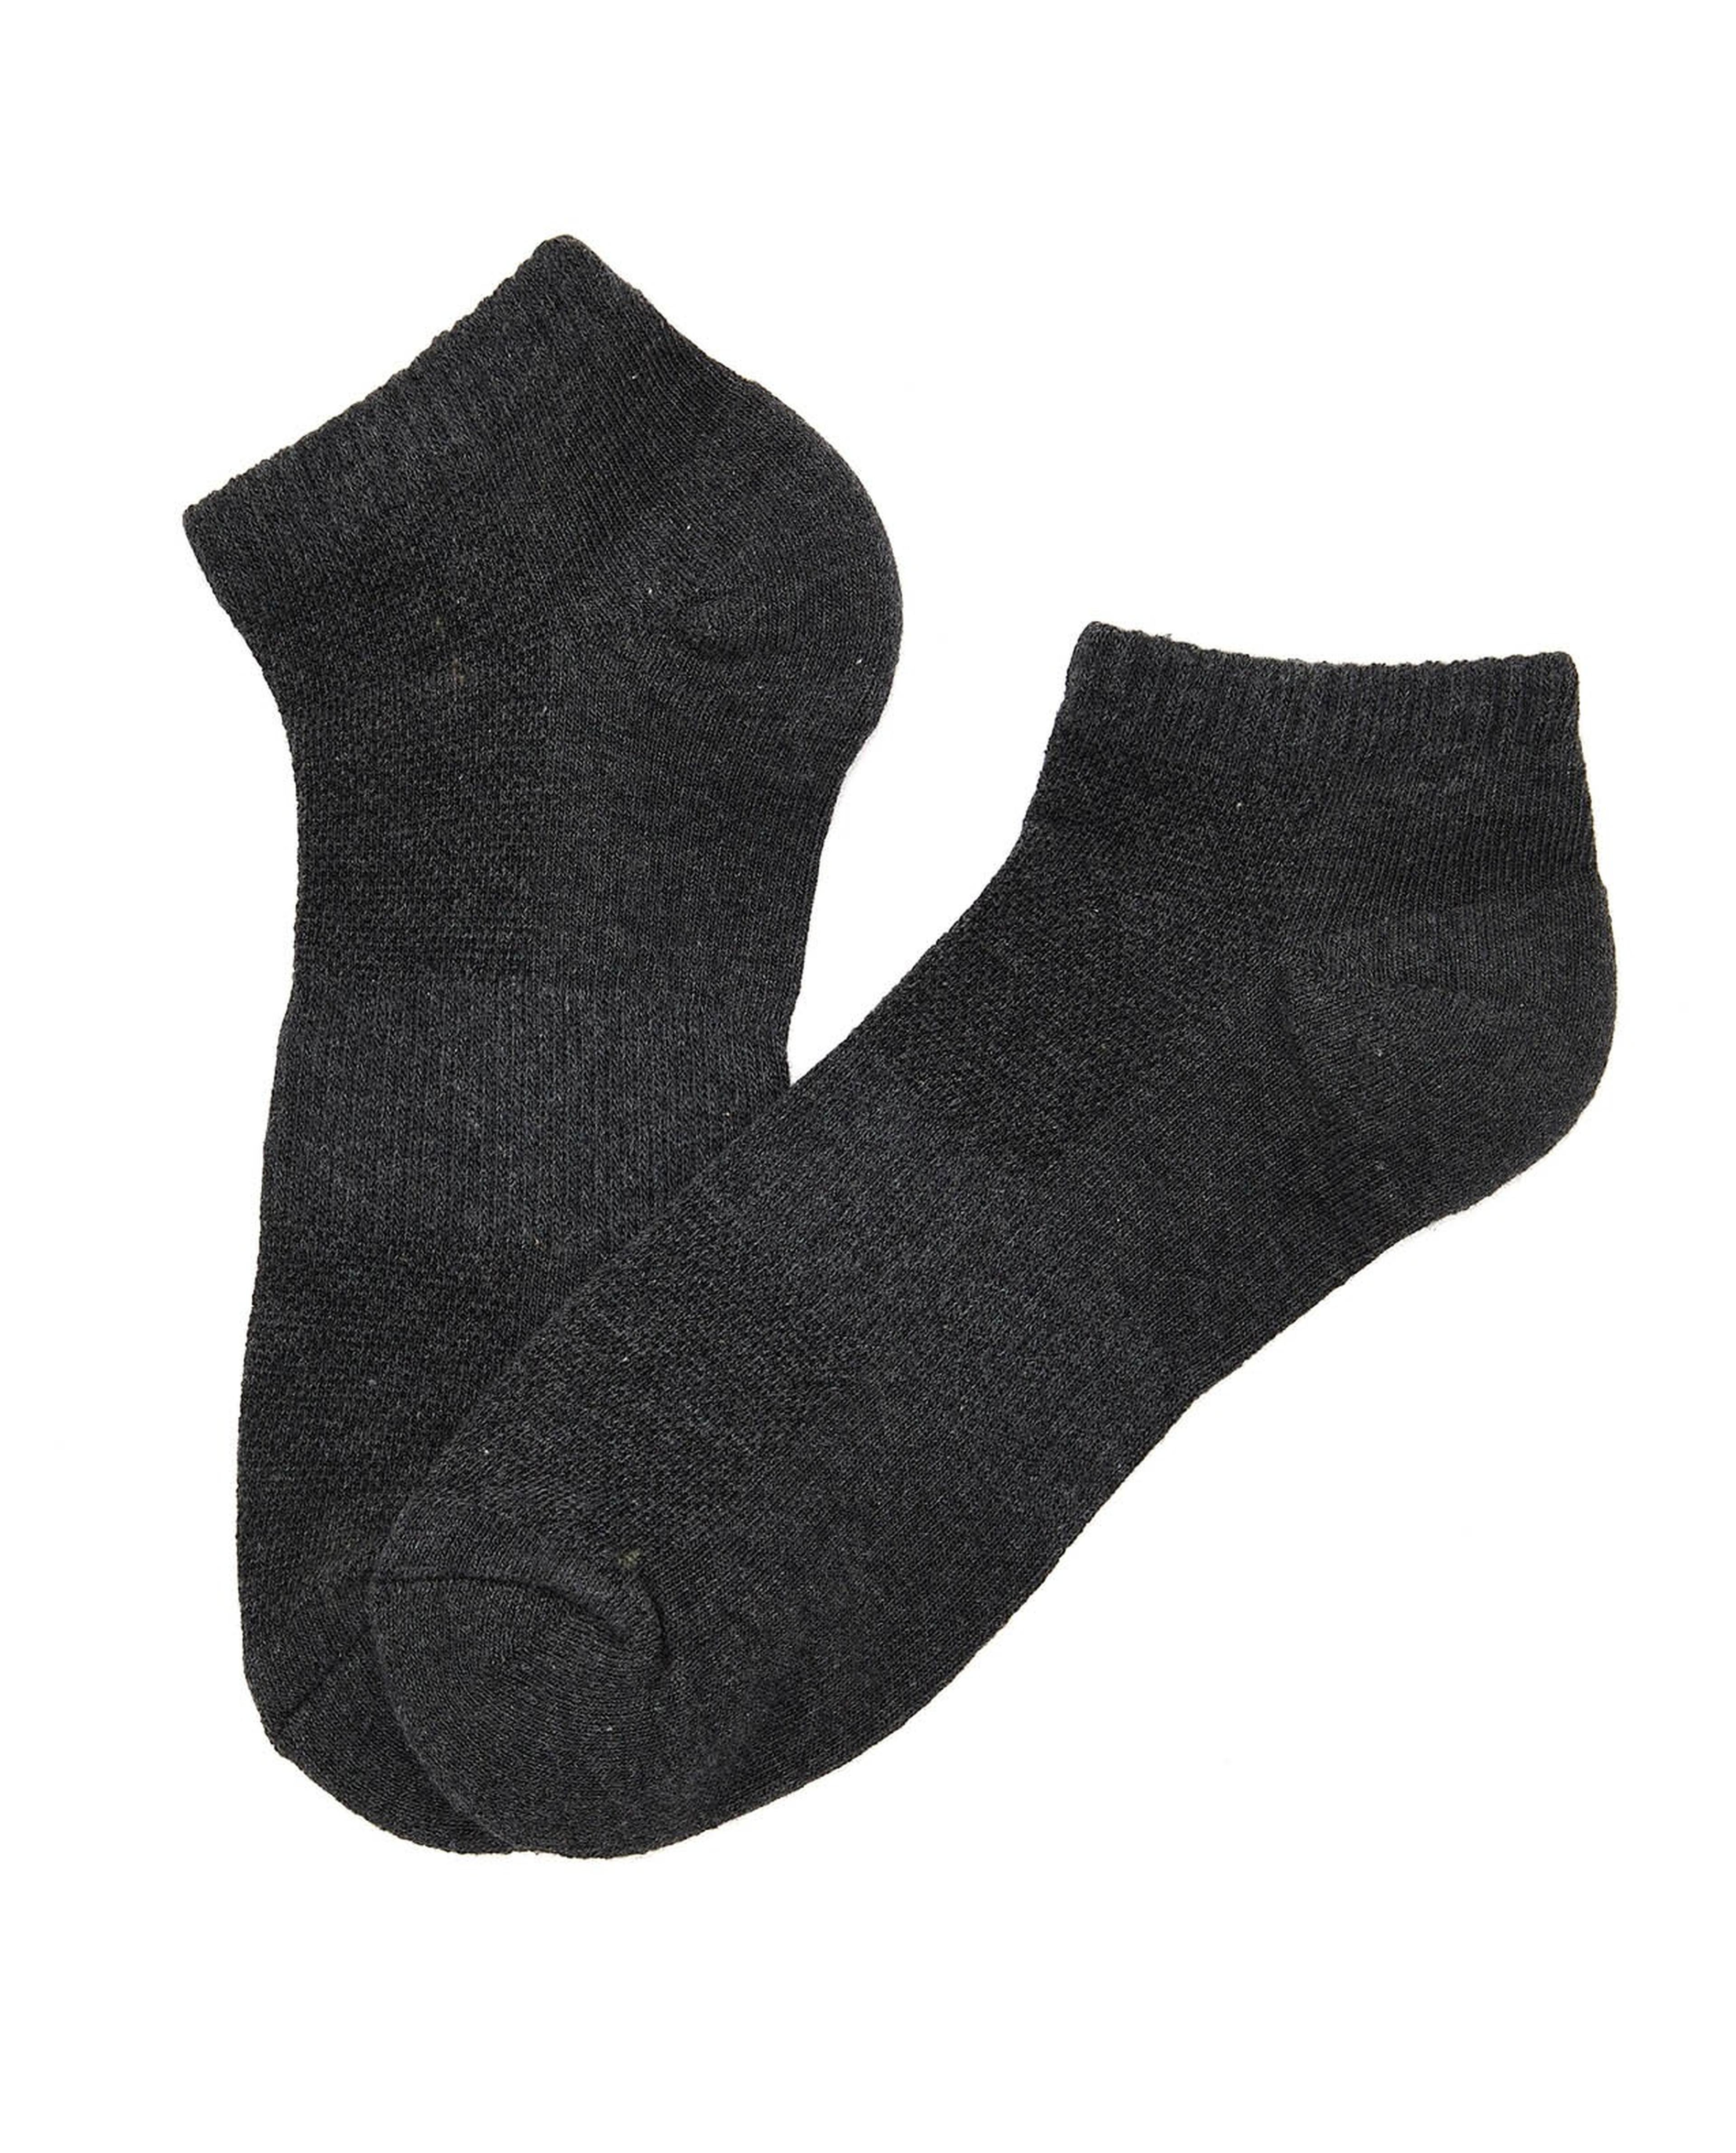 3 Pack Ankle Socks